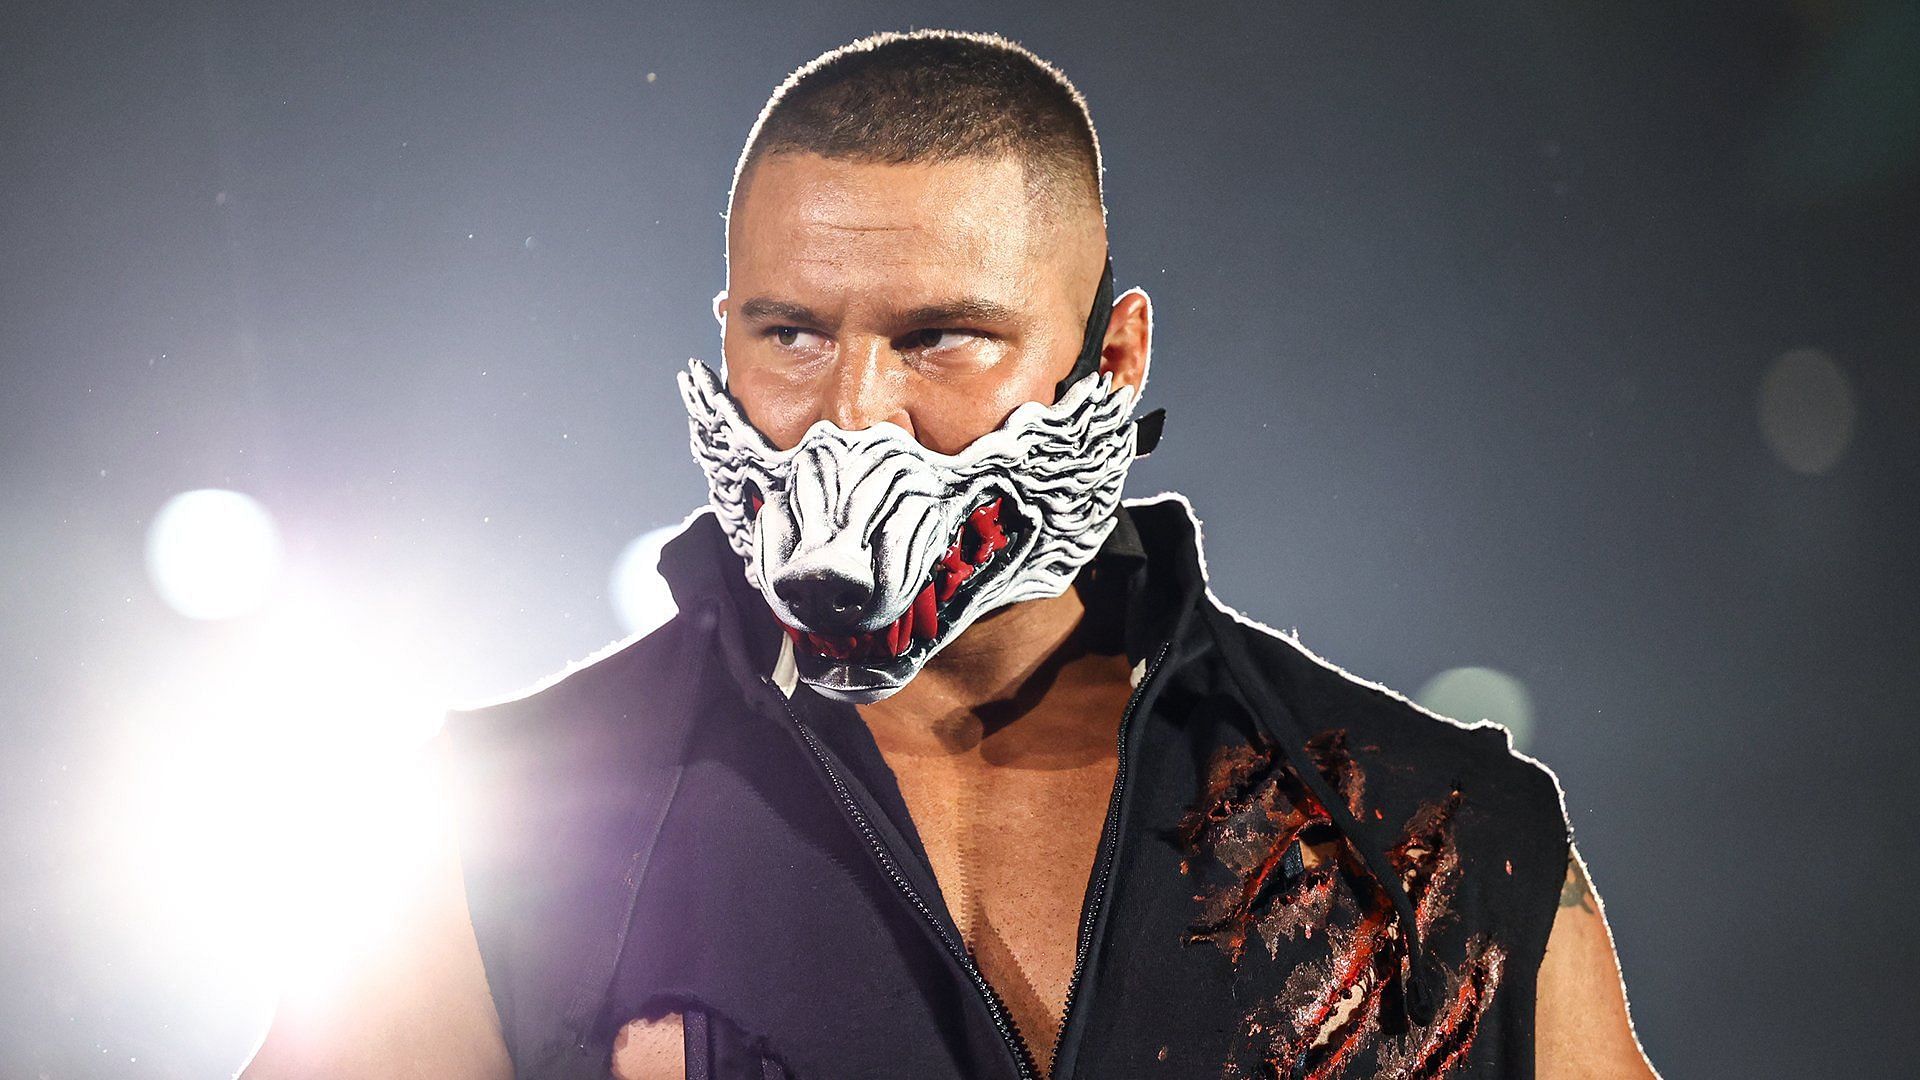 Bron Breakker is a former NXT Champion.